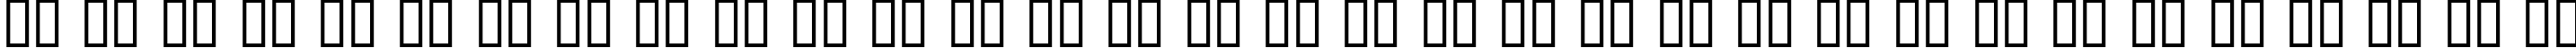 Пример написания русского алфавита шрифтом Detective